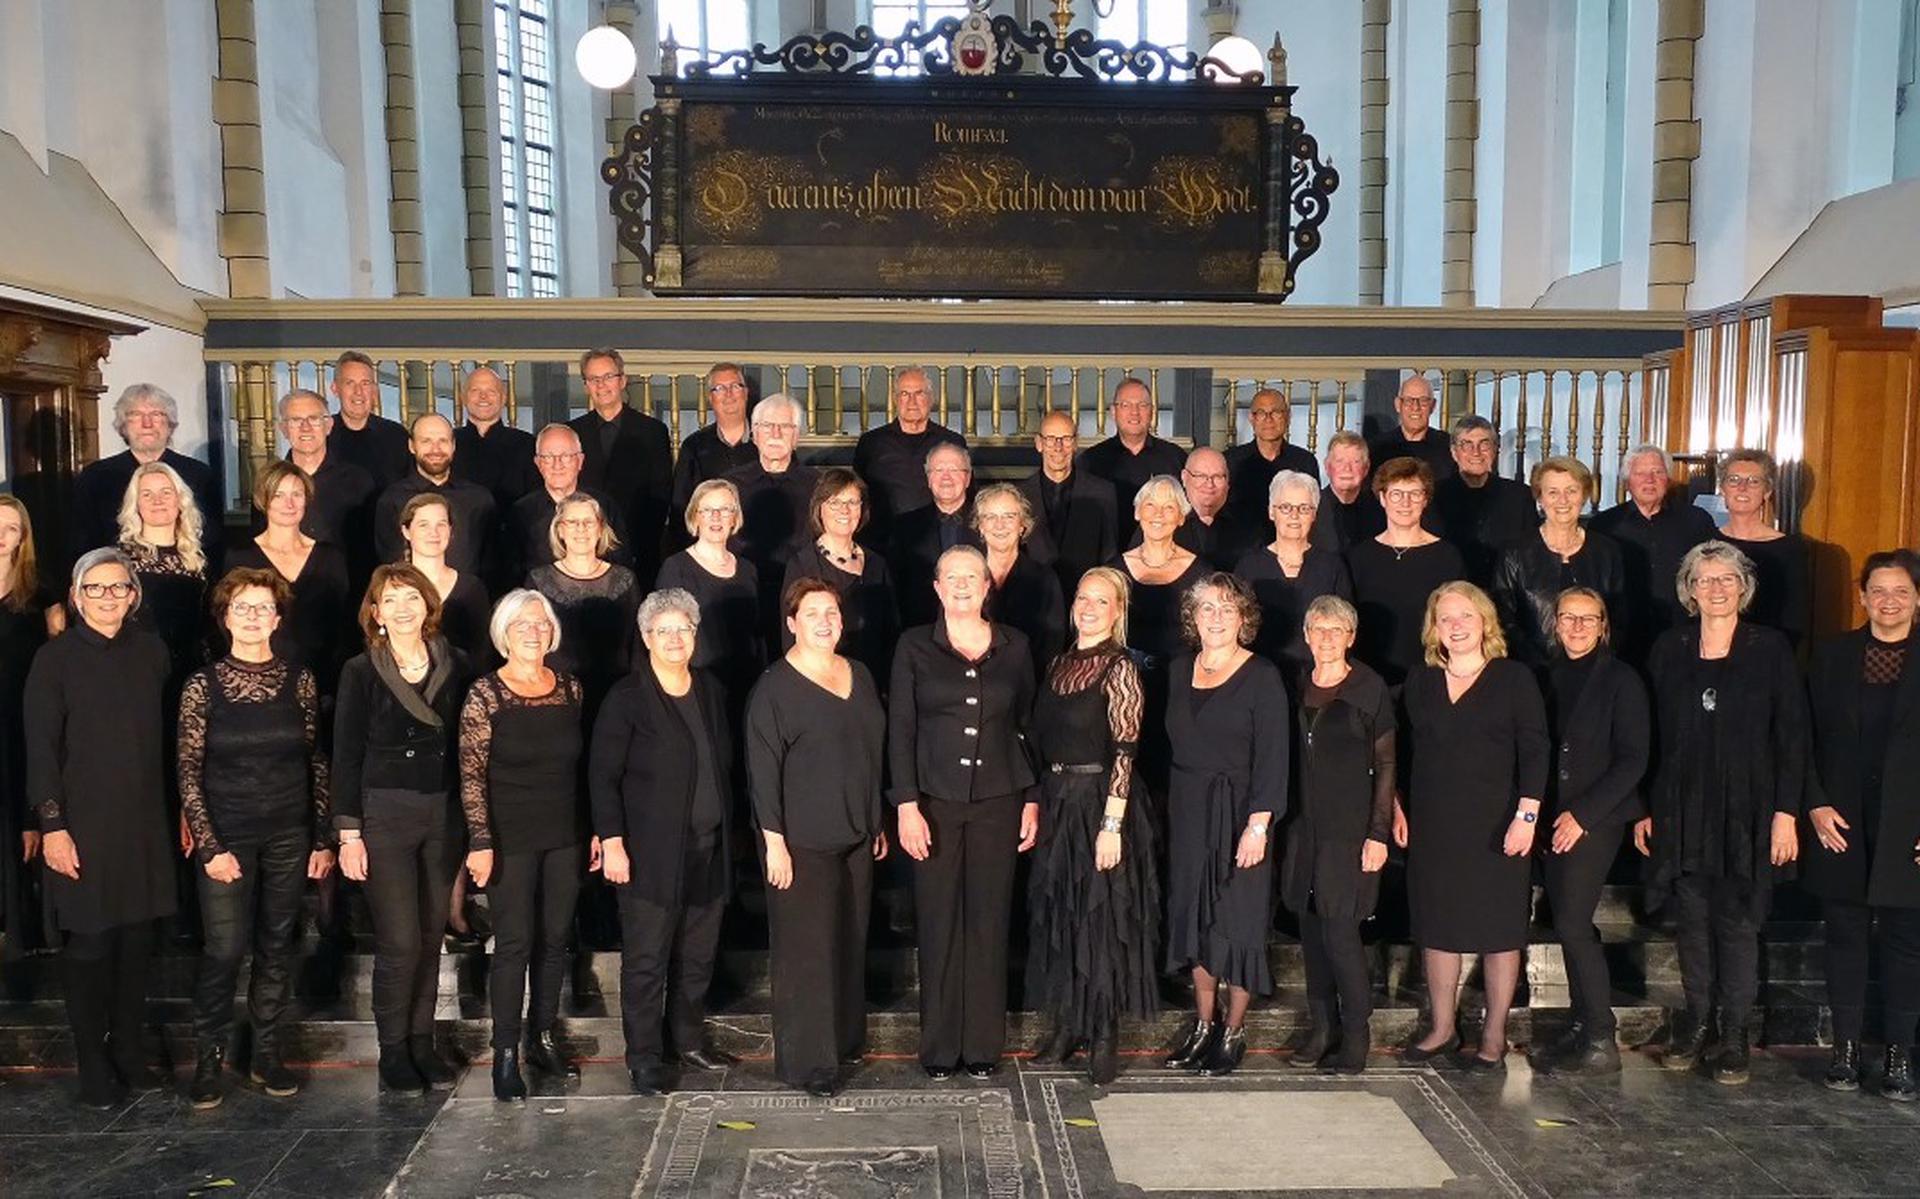 Het koor Cantica Sacra is zaterdag te zien en te horen in de Grote Kerk Steenwijk. 